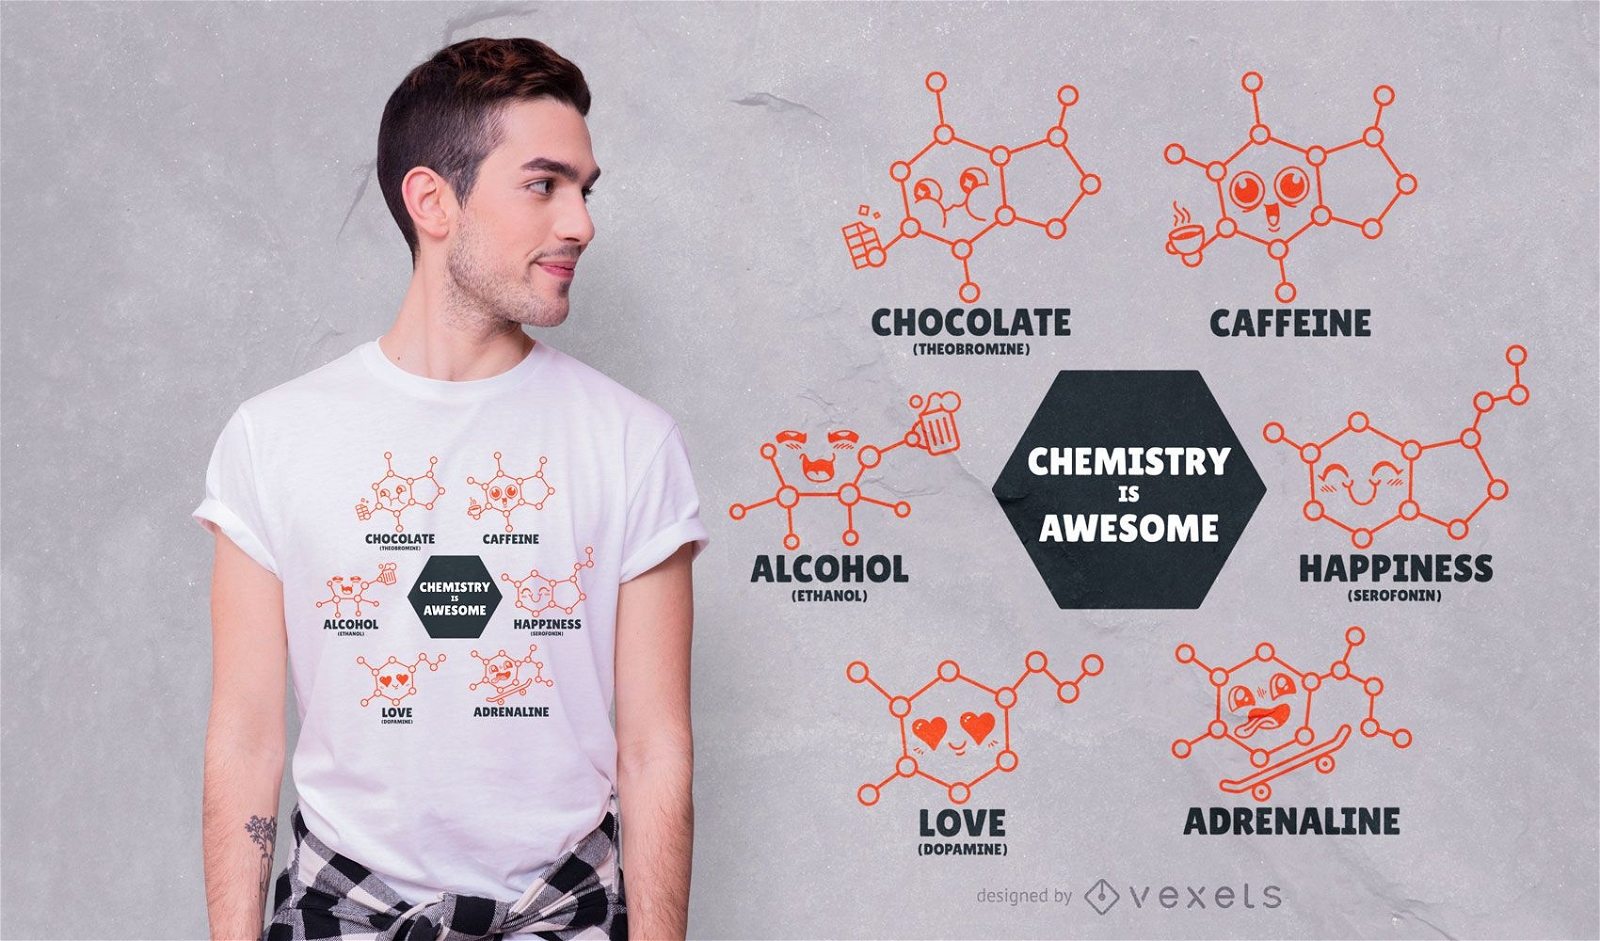 La química es un diseño de camiseta impresionante